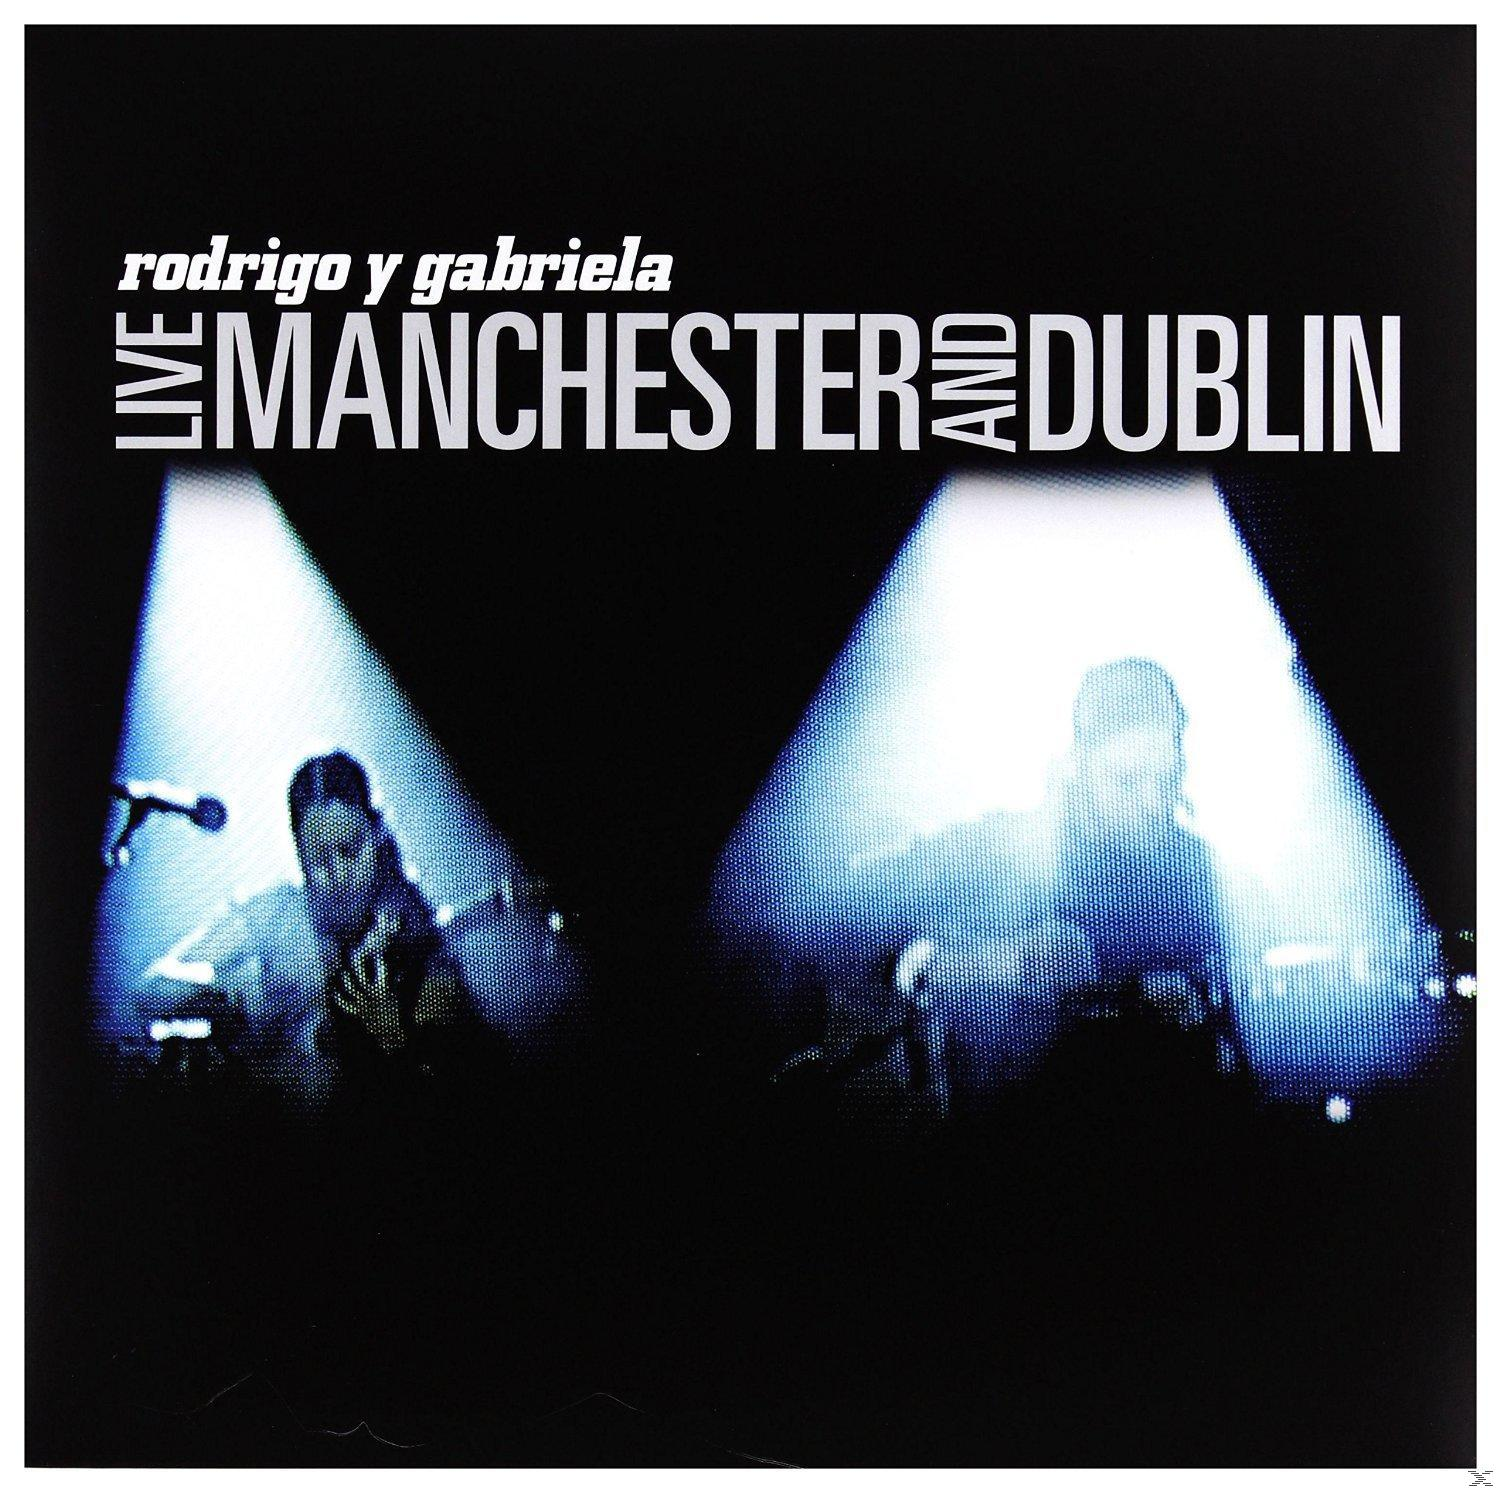 Rodrigo Y Gabriela - Rodrigo And (Vinyl) Dublin Gabriela: Manchester - Live Y